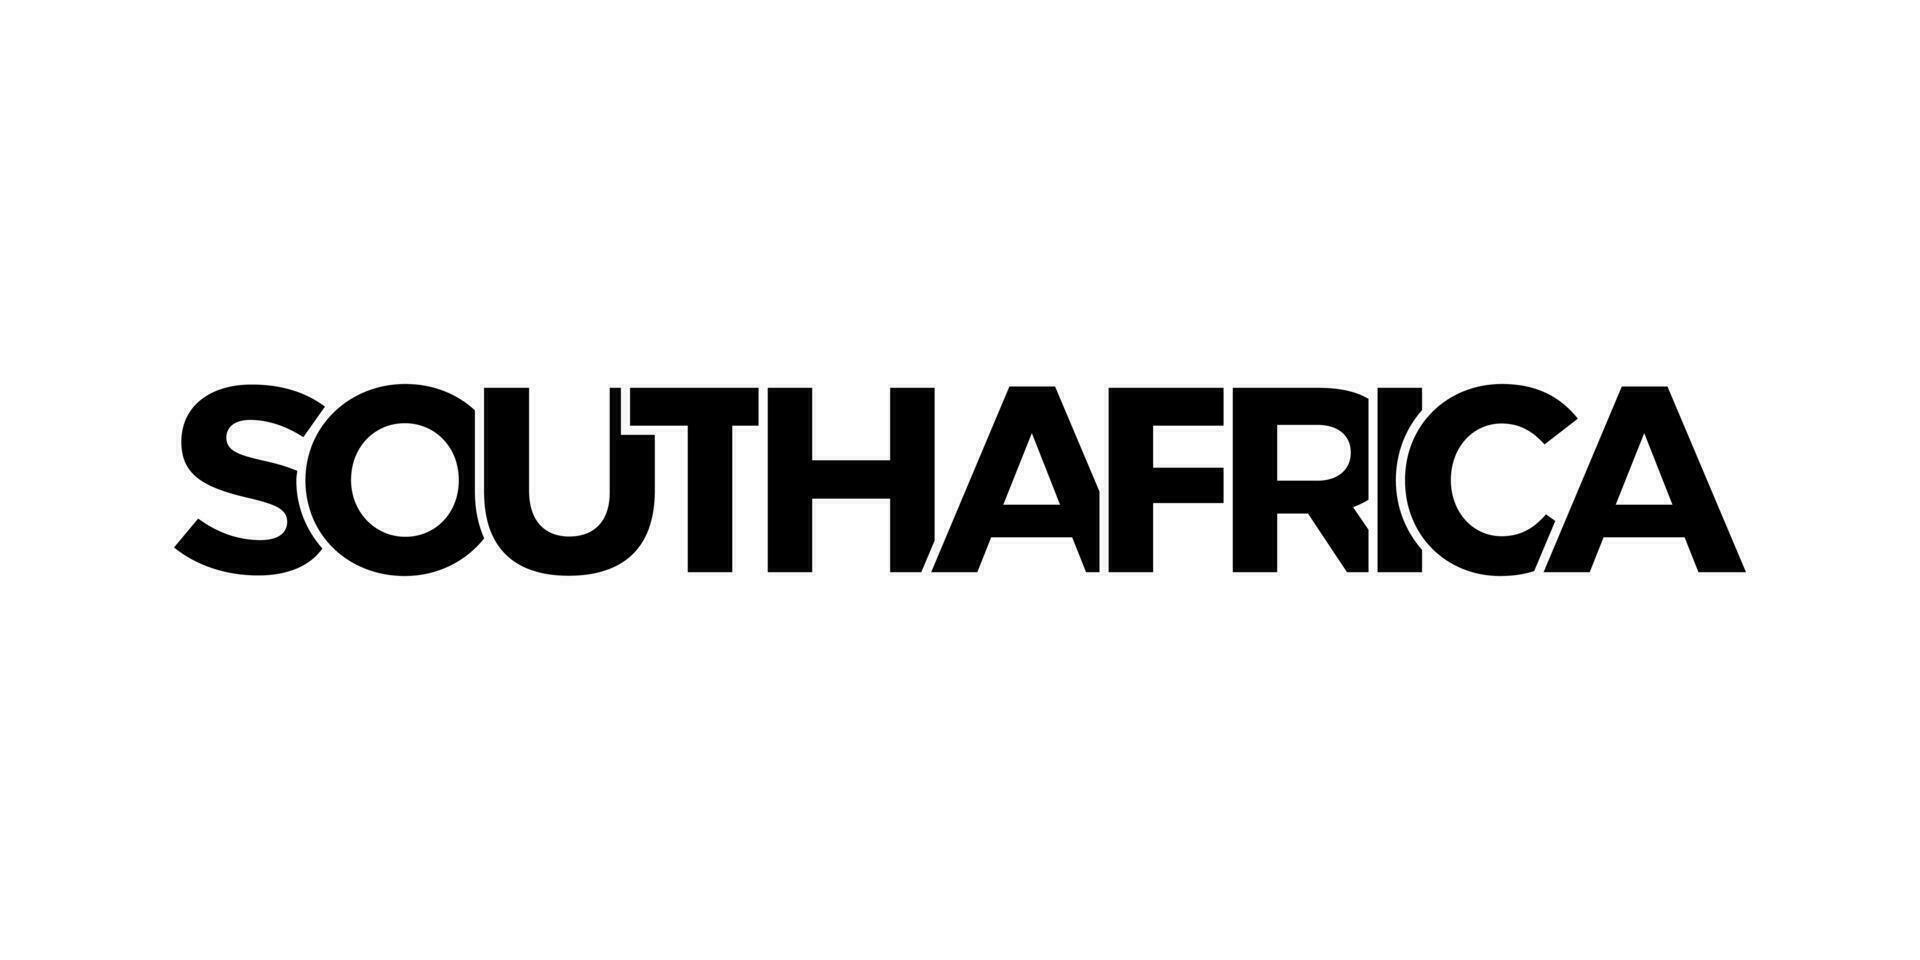 Süd Afrika Emblem. das Design Eigenschaften ein geometrisch Stil, Vektor Illustration mit Fett gedruckt Typografie im ein modern Schriftart. das Grafik Slogan Beschriftung.